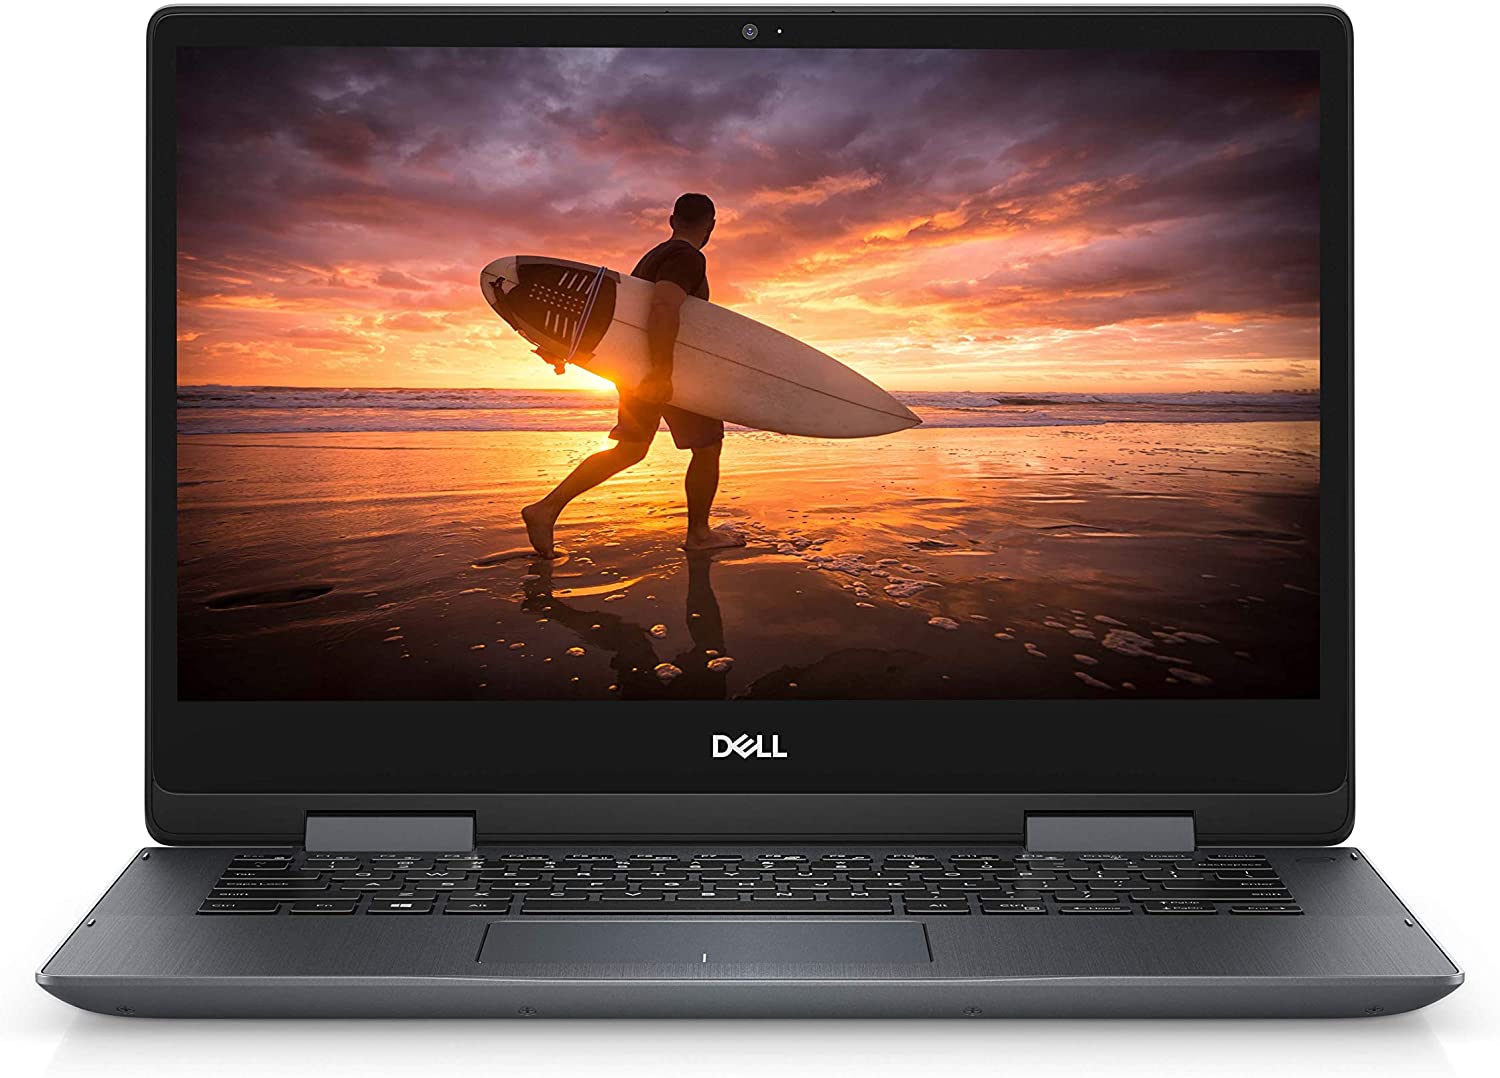 Dell Inspiron 14 - Best Laptops Under 400